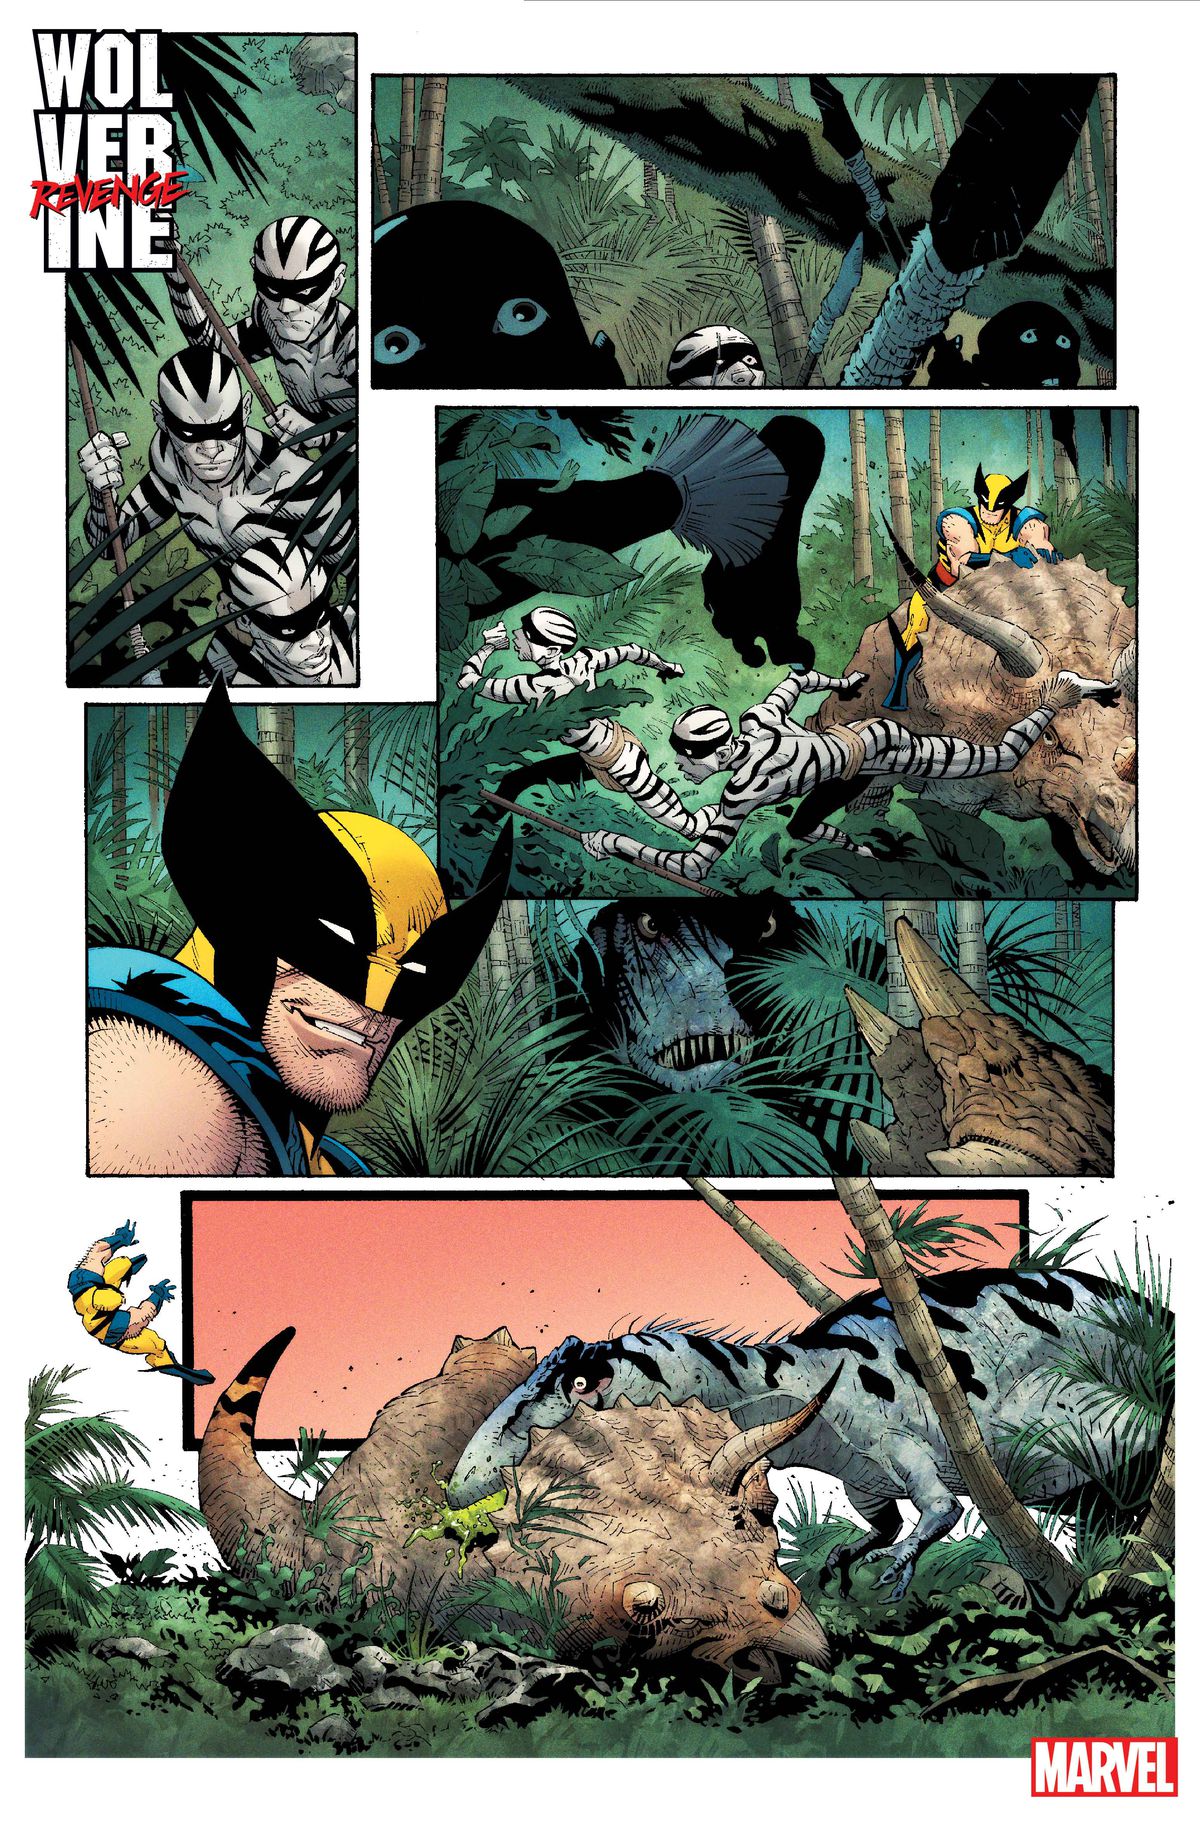 Ludzie zebry uciekają, gdy Wolverine patrzy z uśmiechem, jak ogromny dinozaur typu teropoda wyskakuje z ukrycia i powala swojego wierzchowca ceratopsa, zrzucając go z siebie w Wolverine: Revenge #1.